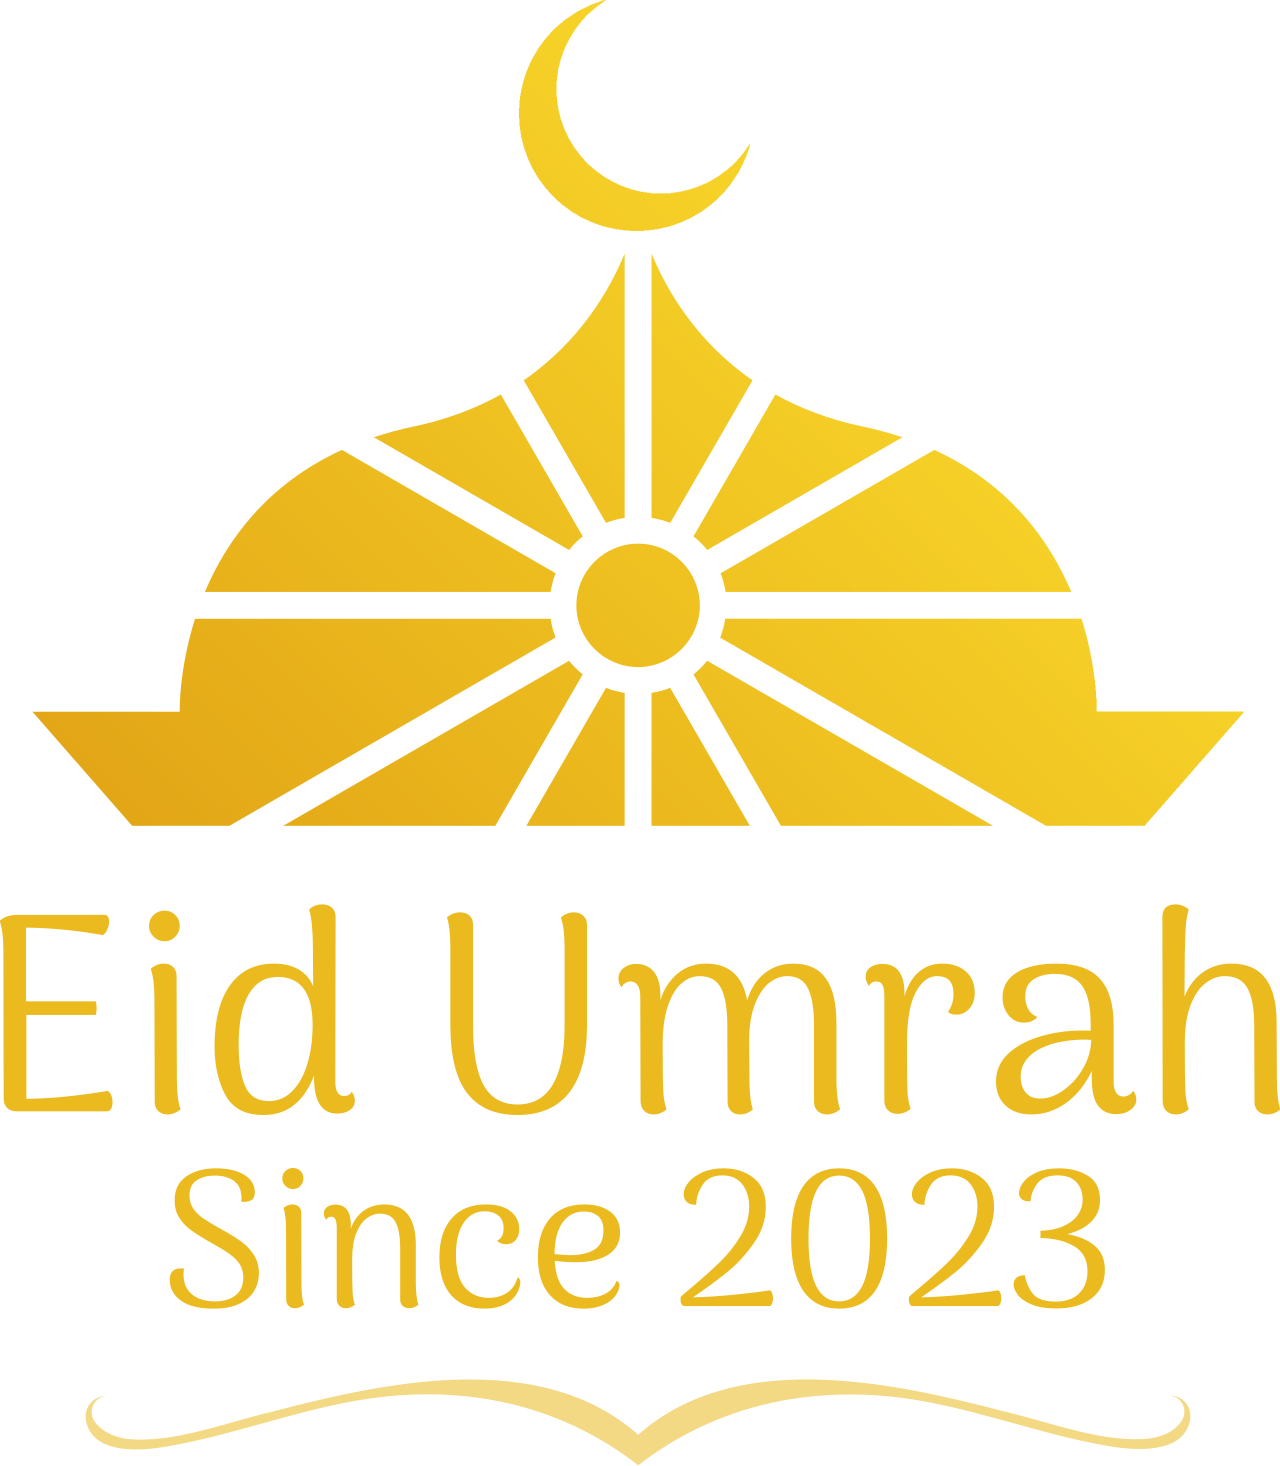 Eid Umrah's logo